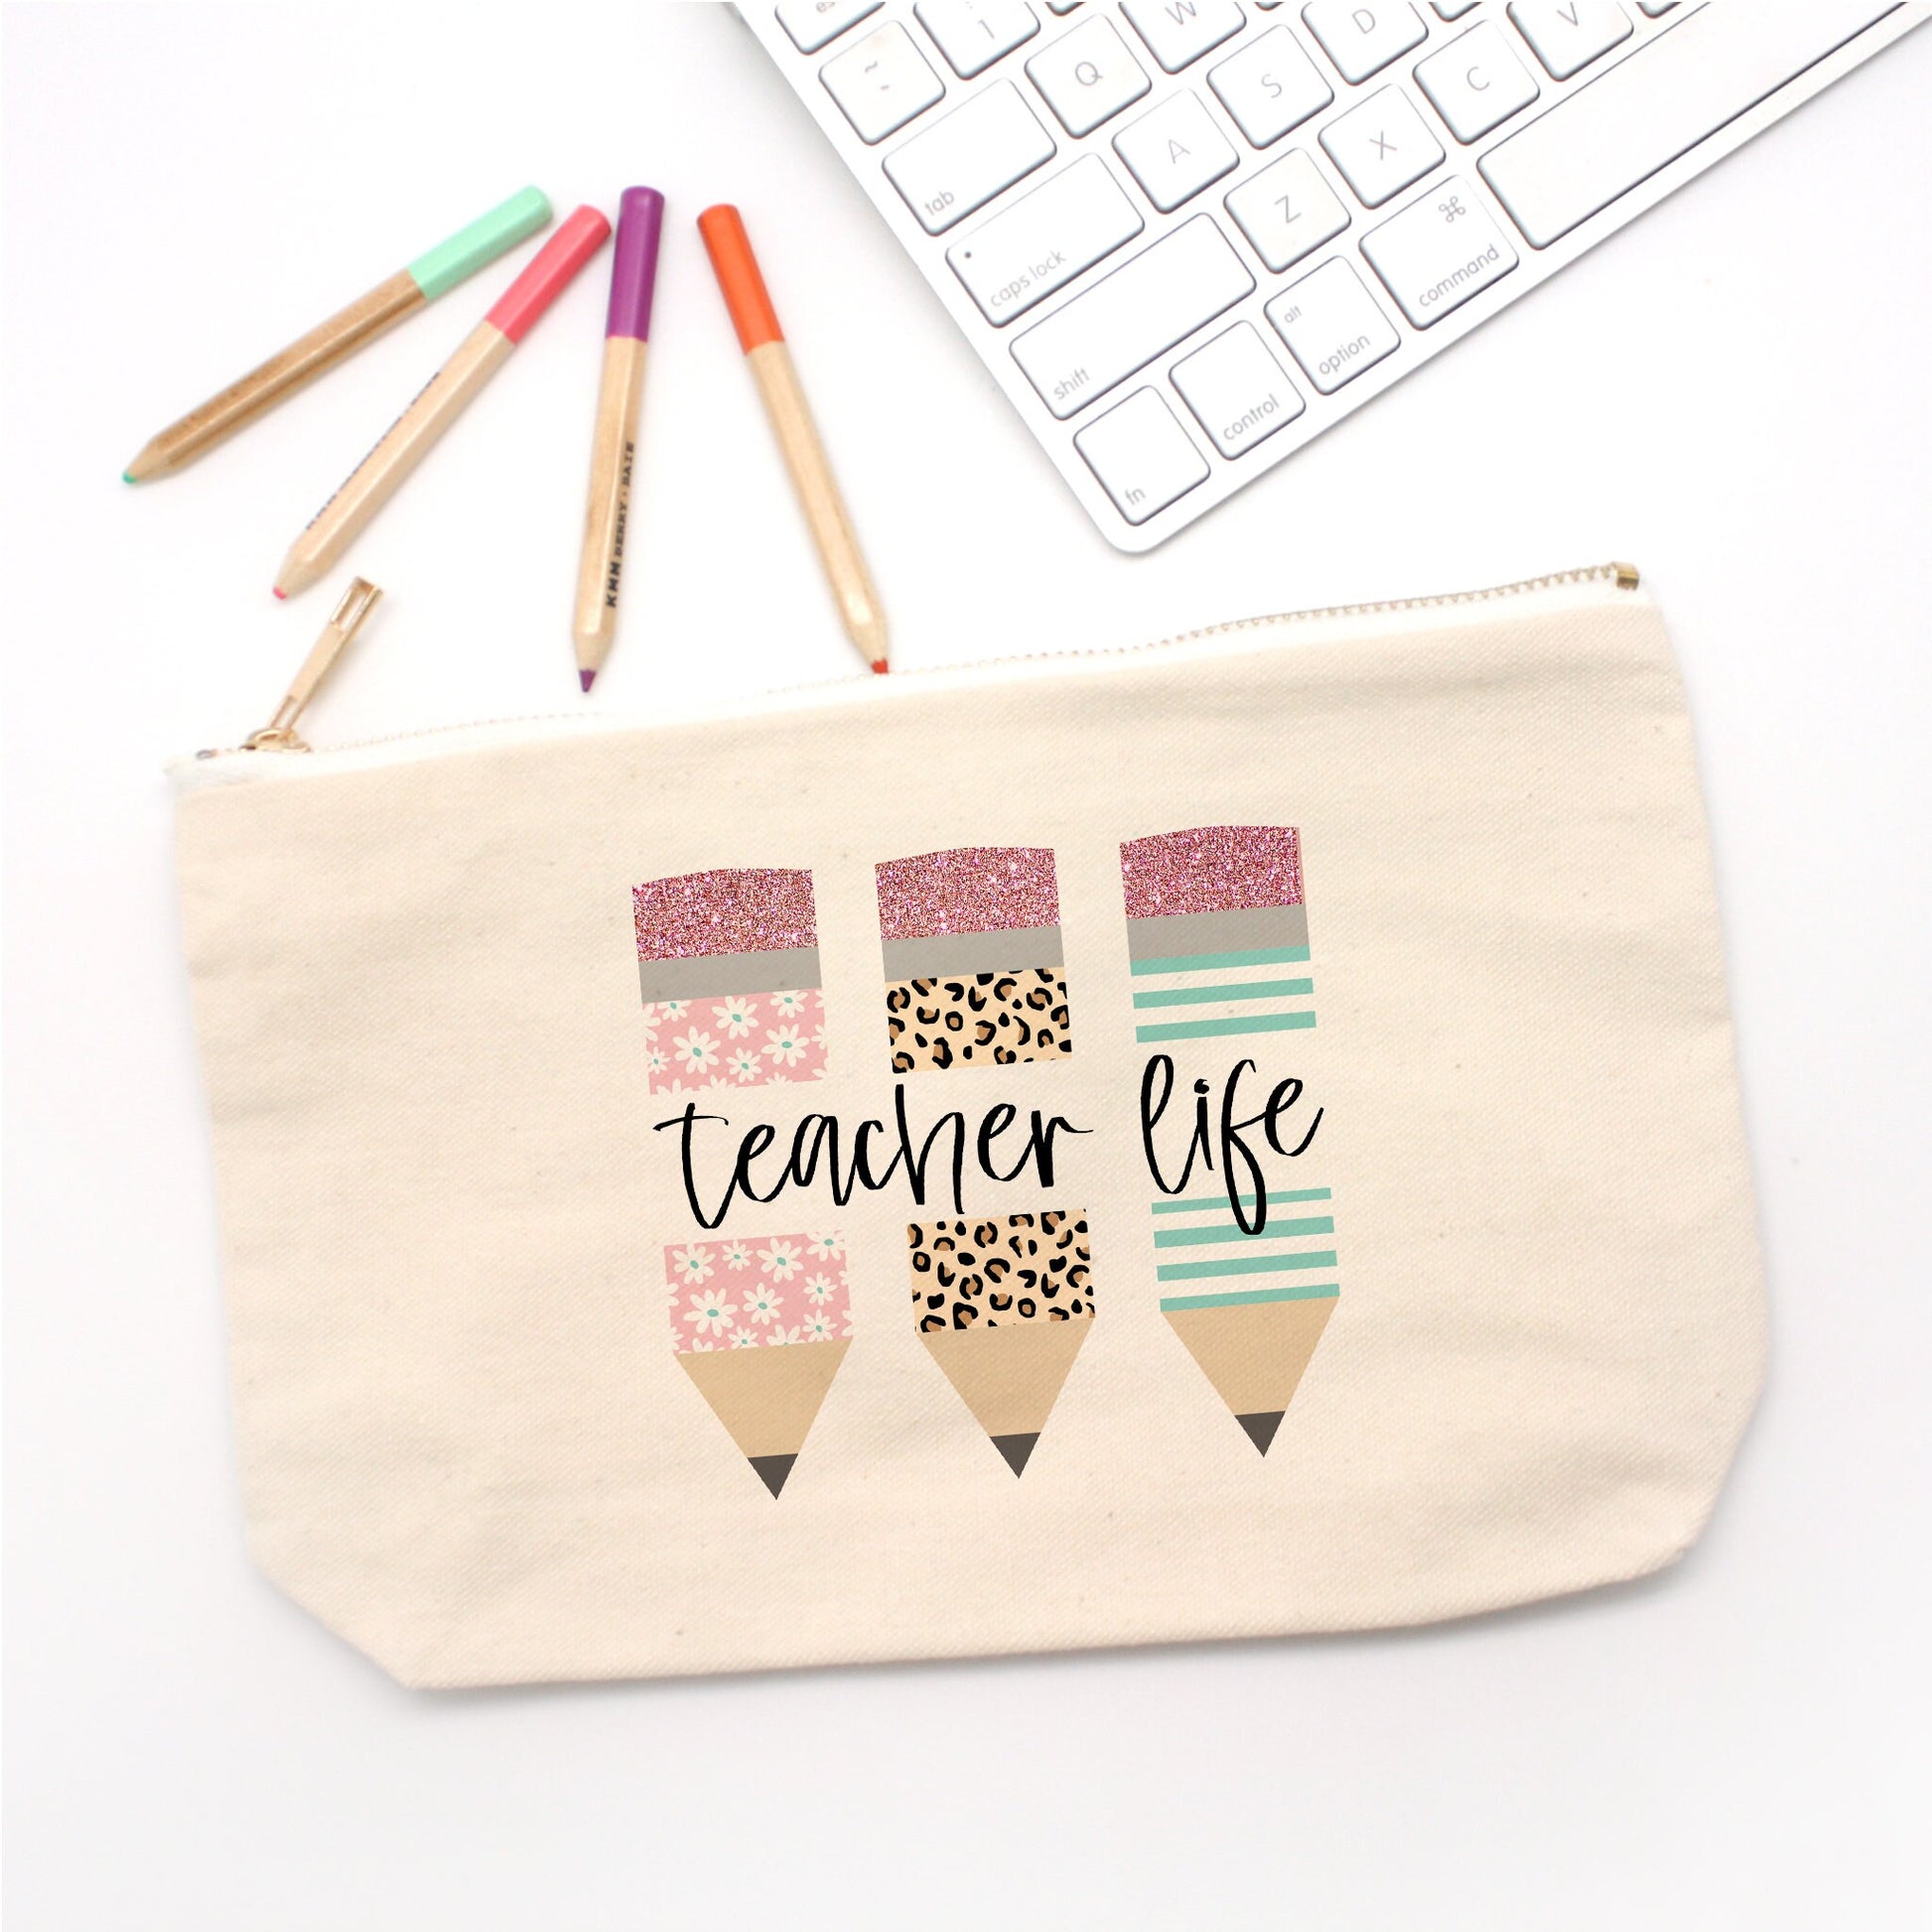 Pencil Bag for Teachers - Canvas Penicil Bag - Teacher Life Pencil Bag - Teacher Gift - End of Year Gift for Teacher - Teacher Appreciation